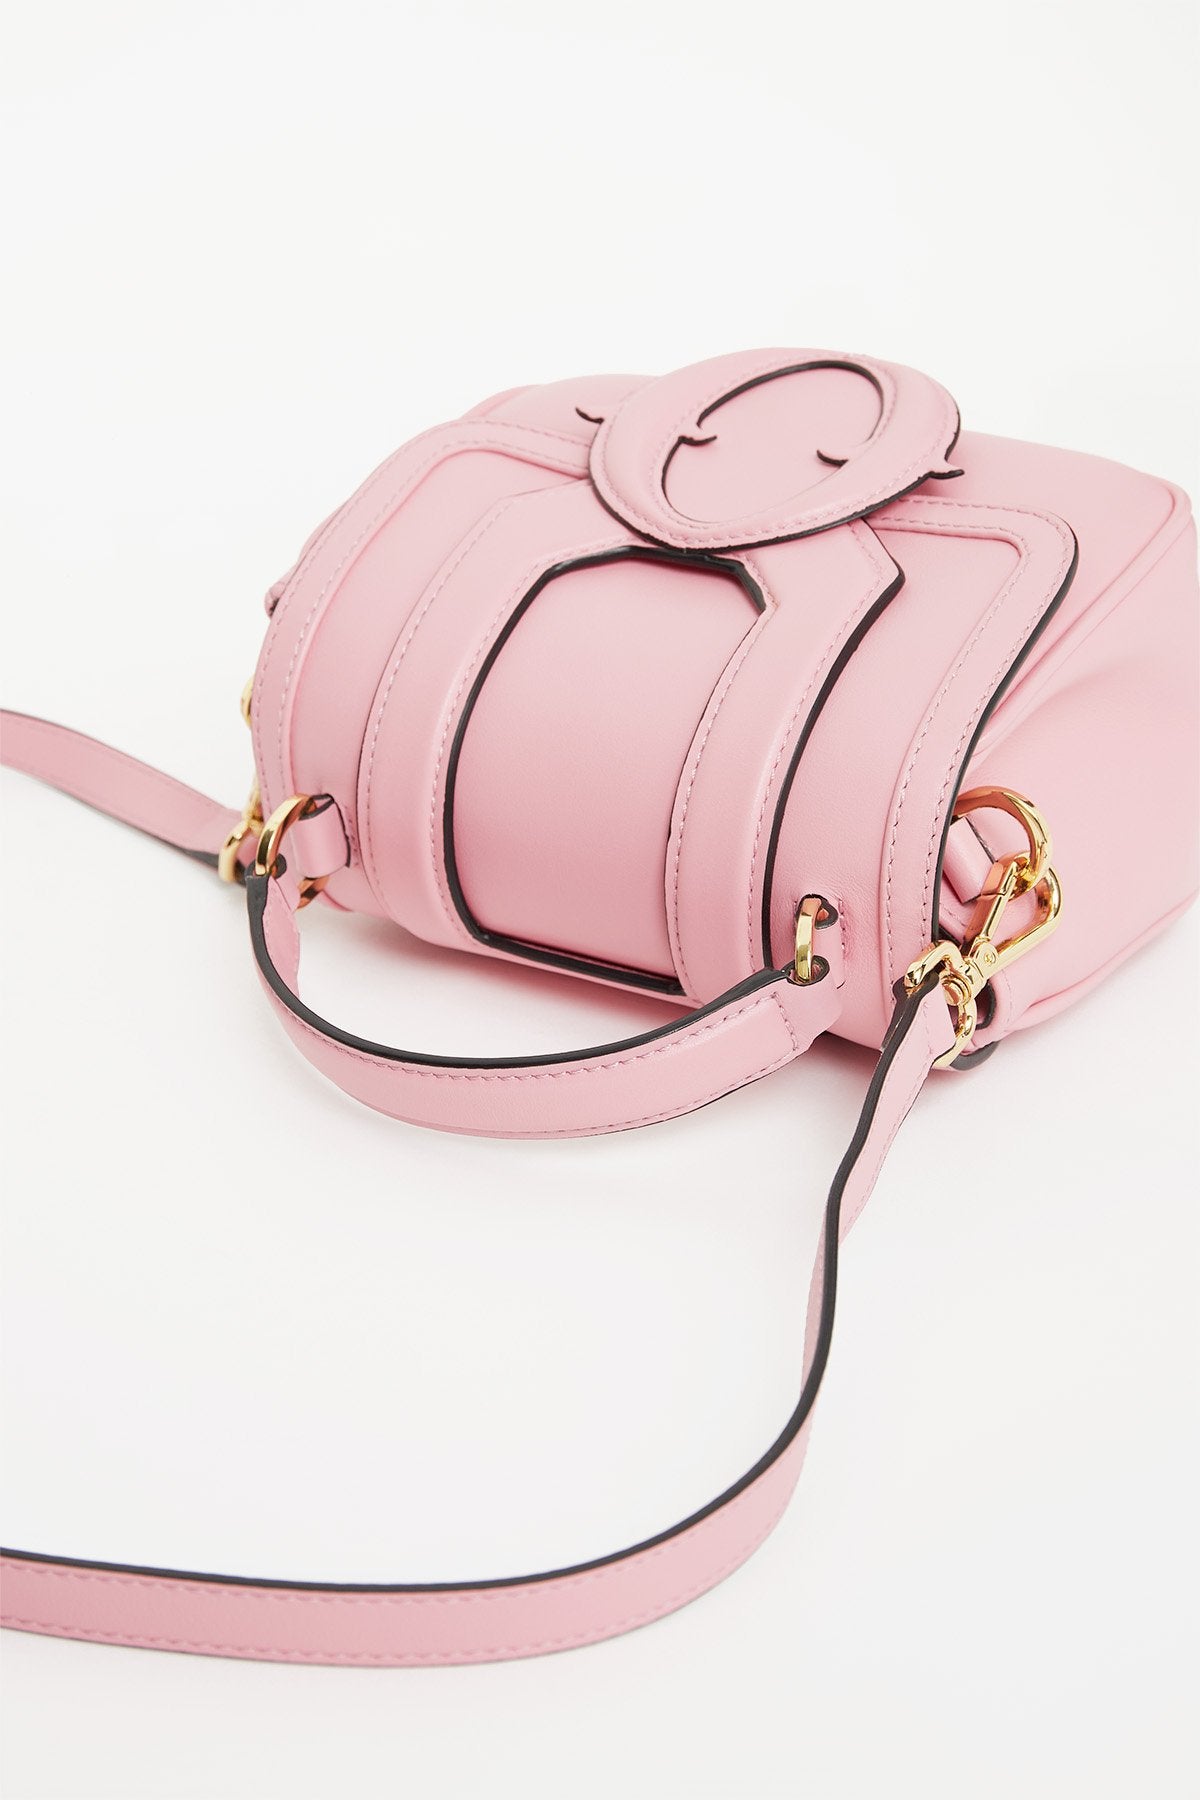 Ottod'Ame - Tesorino Bag Pink